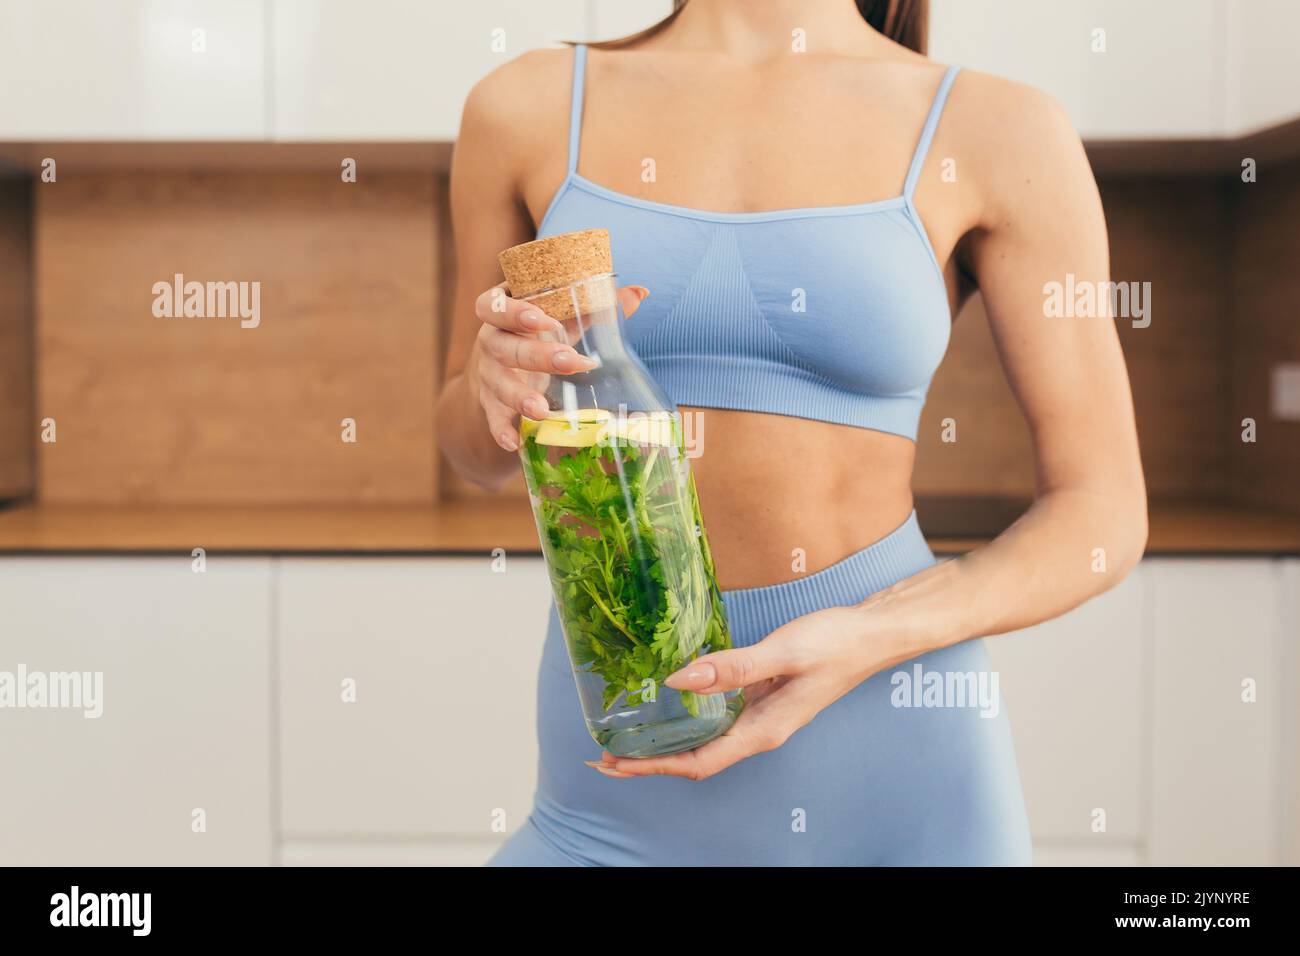 Nahaufnahme eines Körperteils einer jungen Fitness-Frau, die eine Flasche frischen Saft hält und zeigt und zu Hause entgiftet Stockfoto